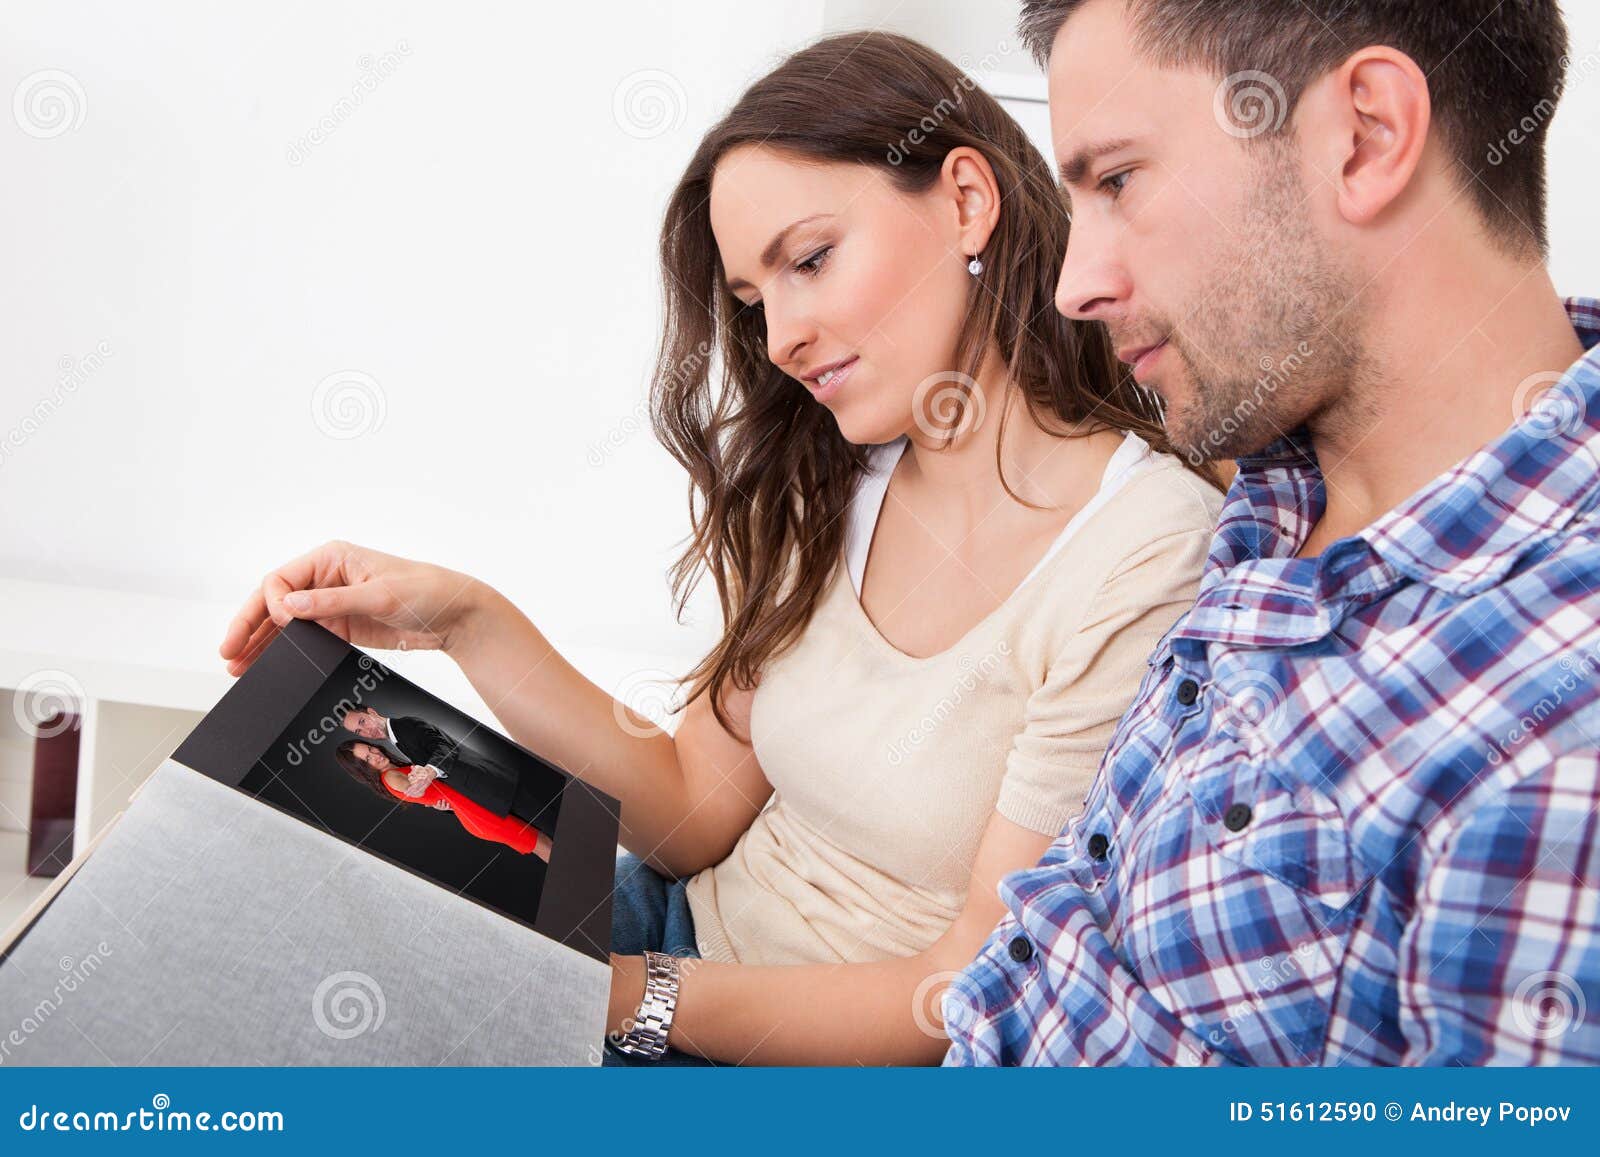 Пригласила вместе с мужем. Мужчина и женщина смотрят фотоальбом. Мужчина рассматривает женщину. Люди рассматривают фотоальбом. Люди рассматривают фотографии.